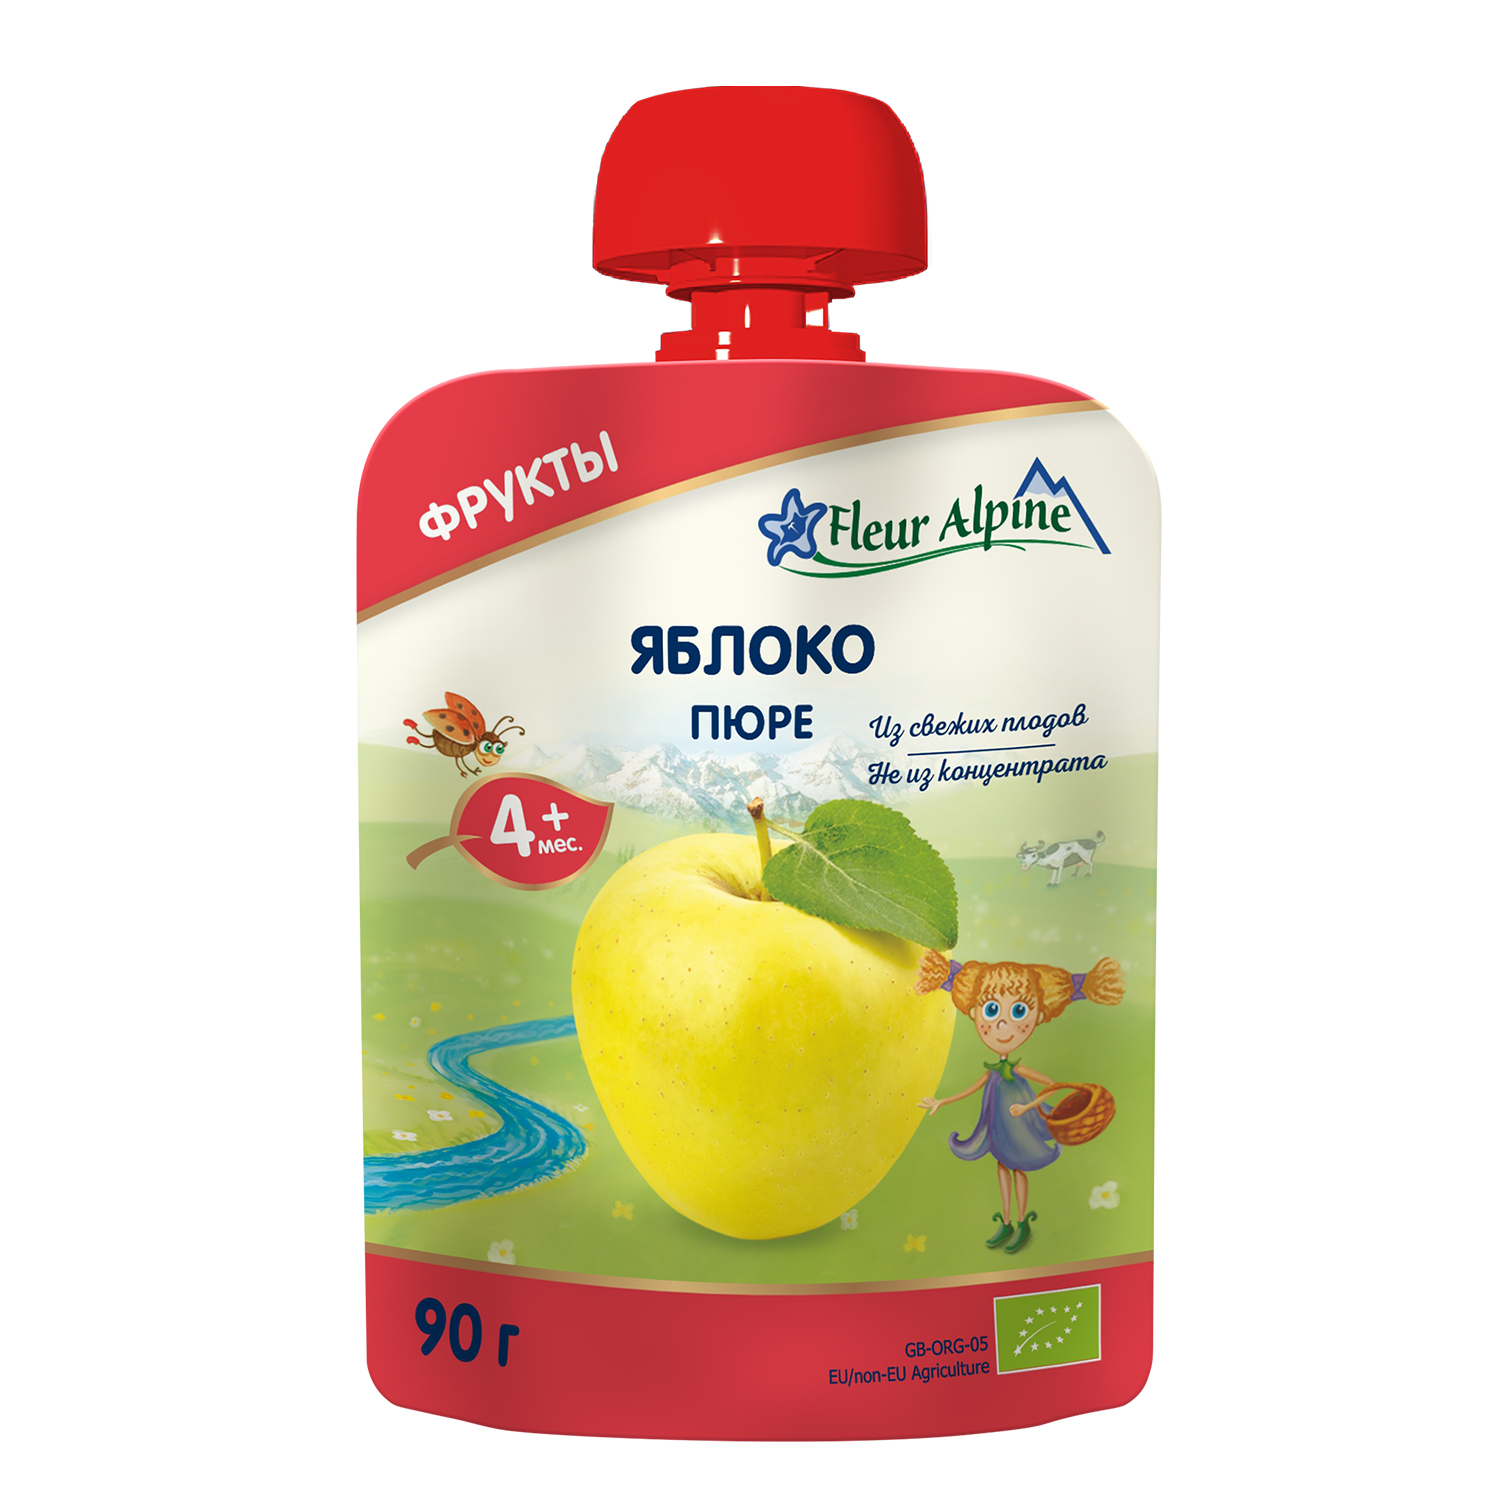 Пюре детское Fleur Alpine ЯБЛОКО, с 4 месяцев, 90 г оливковое масло детское fleur alpine extra virgin с 6 месяцев 500 мл